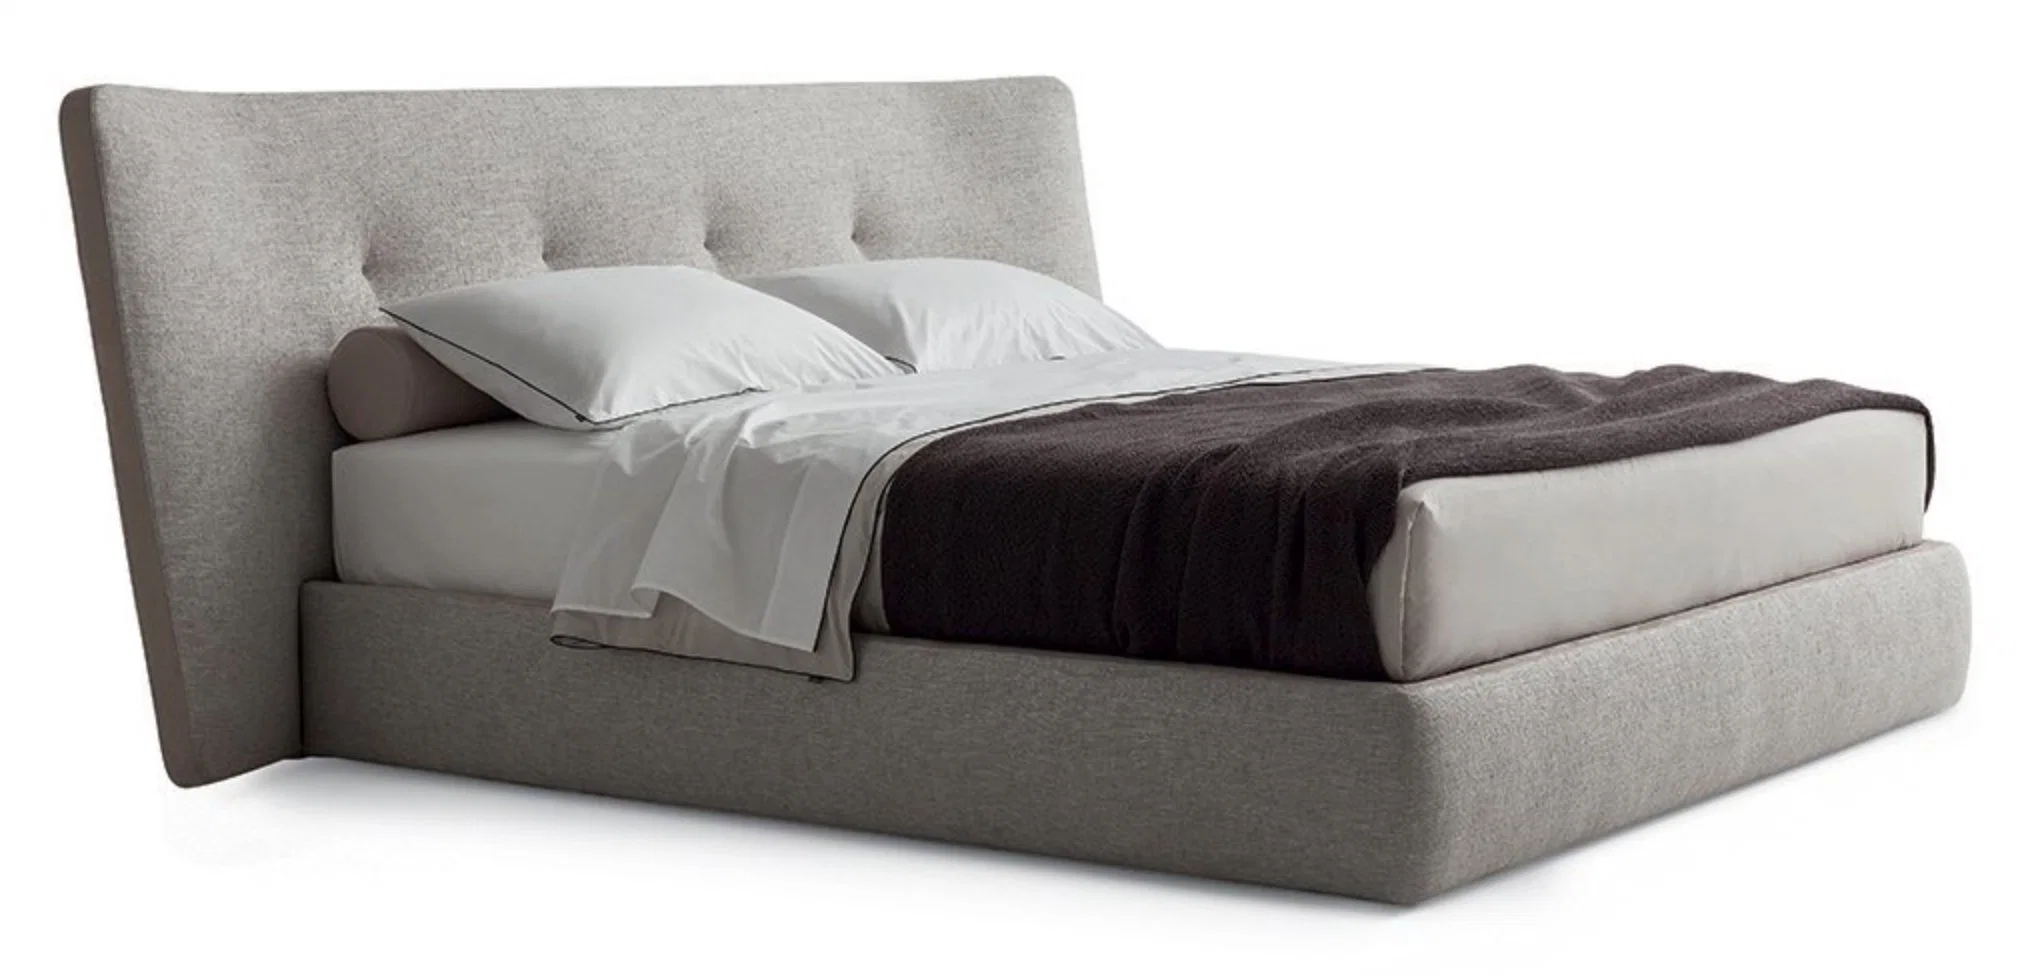 Conforto Quarto mobiliário Camas modernas Cama de casal tecido moderno macio Cama cama queen size king size